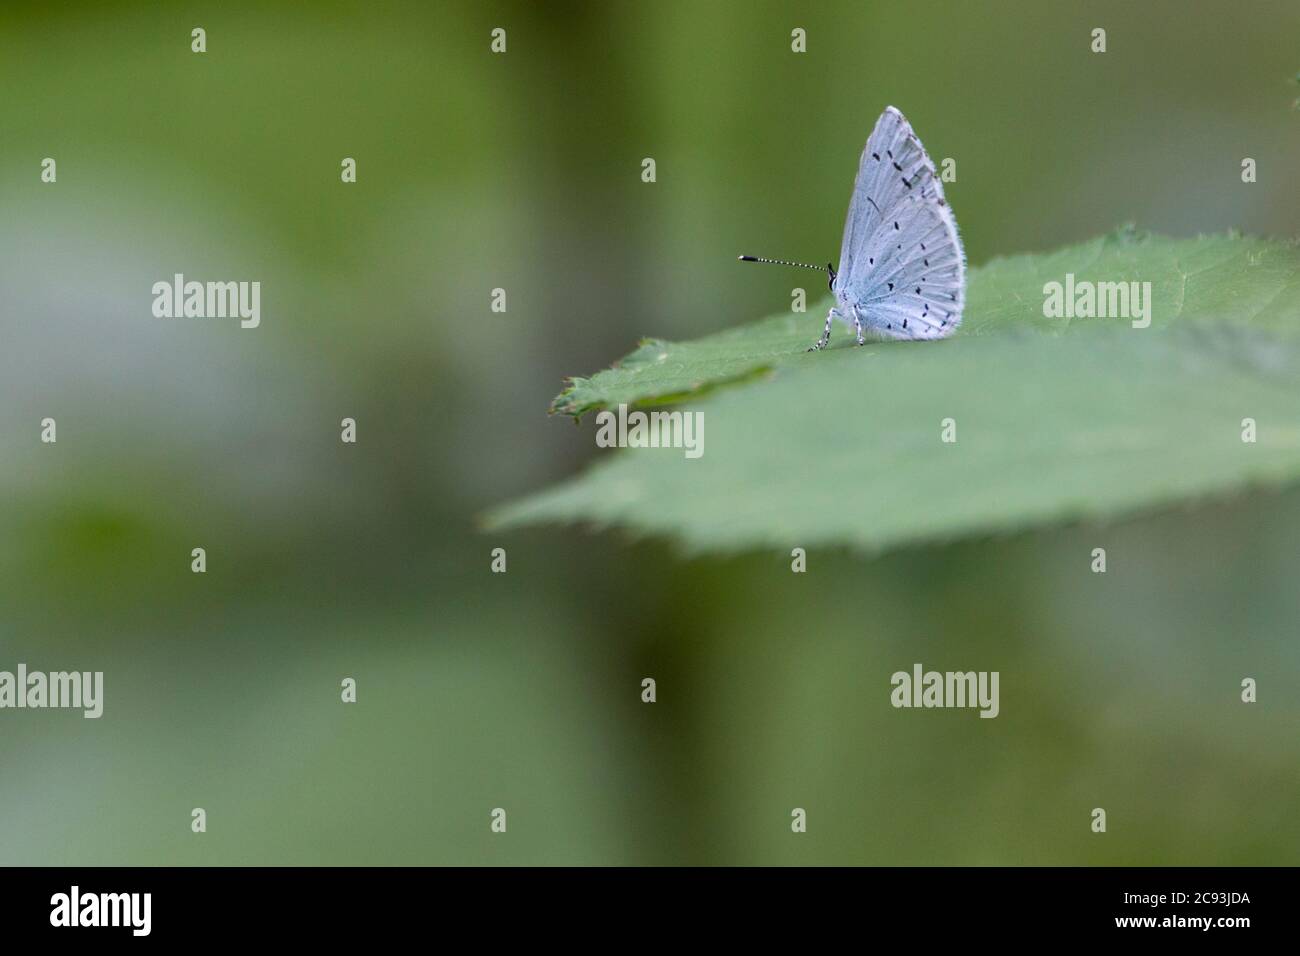 Mariposa hembra azul acebo (Celastrina argiolus) banda más oscura de segunda generación en la aleta interna. Debajo de delicados puntos azules y negros pequeños Foto de stock